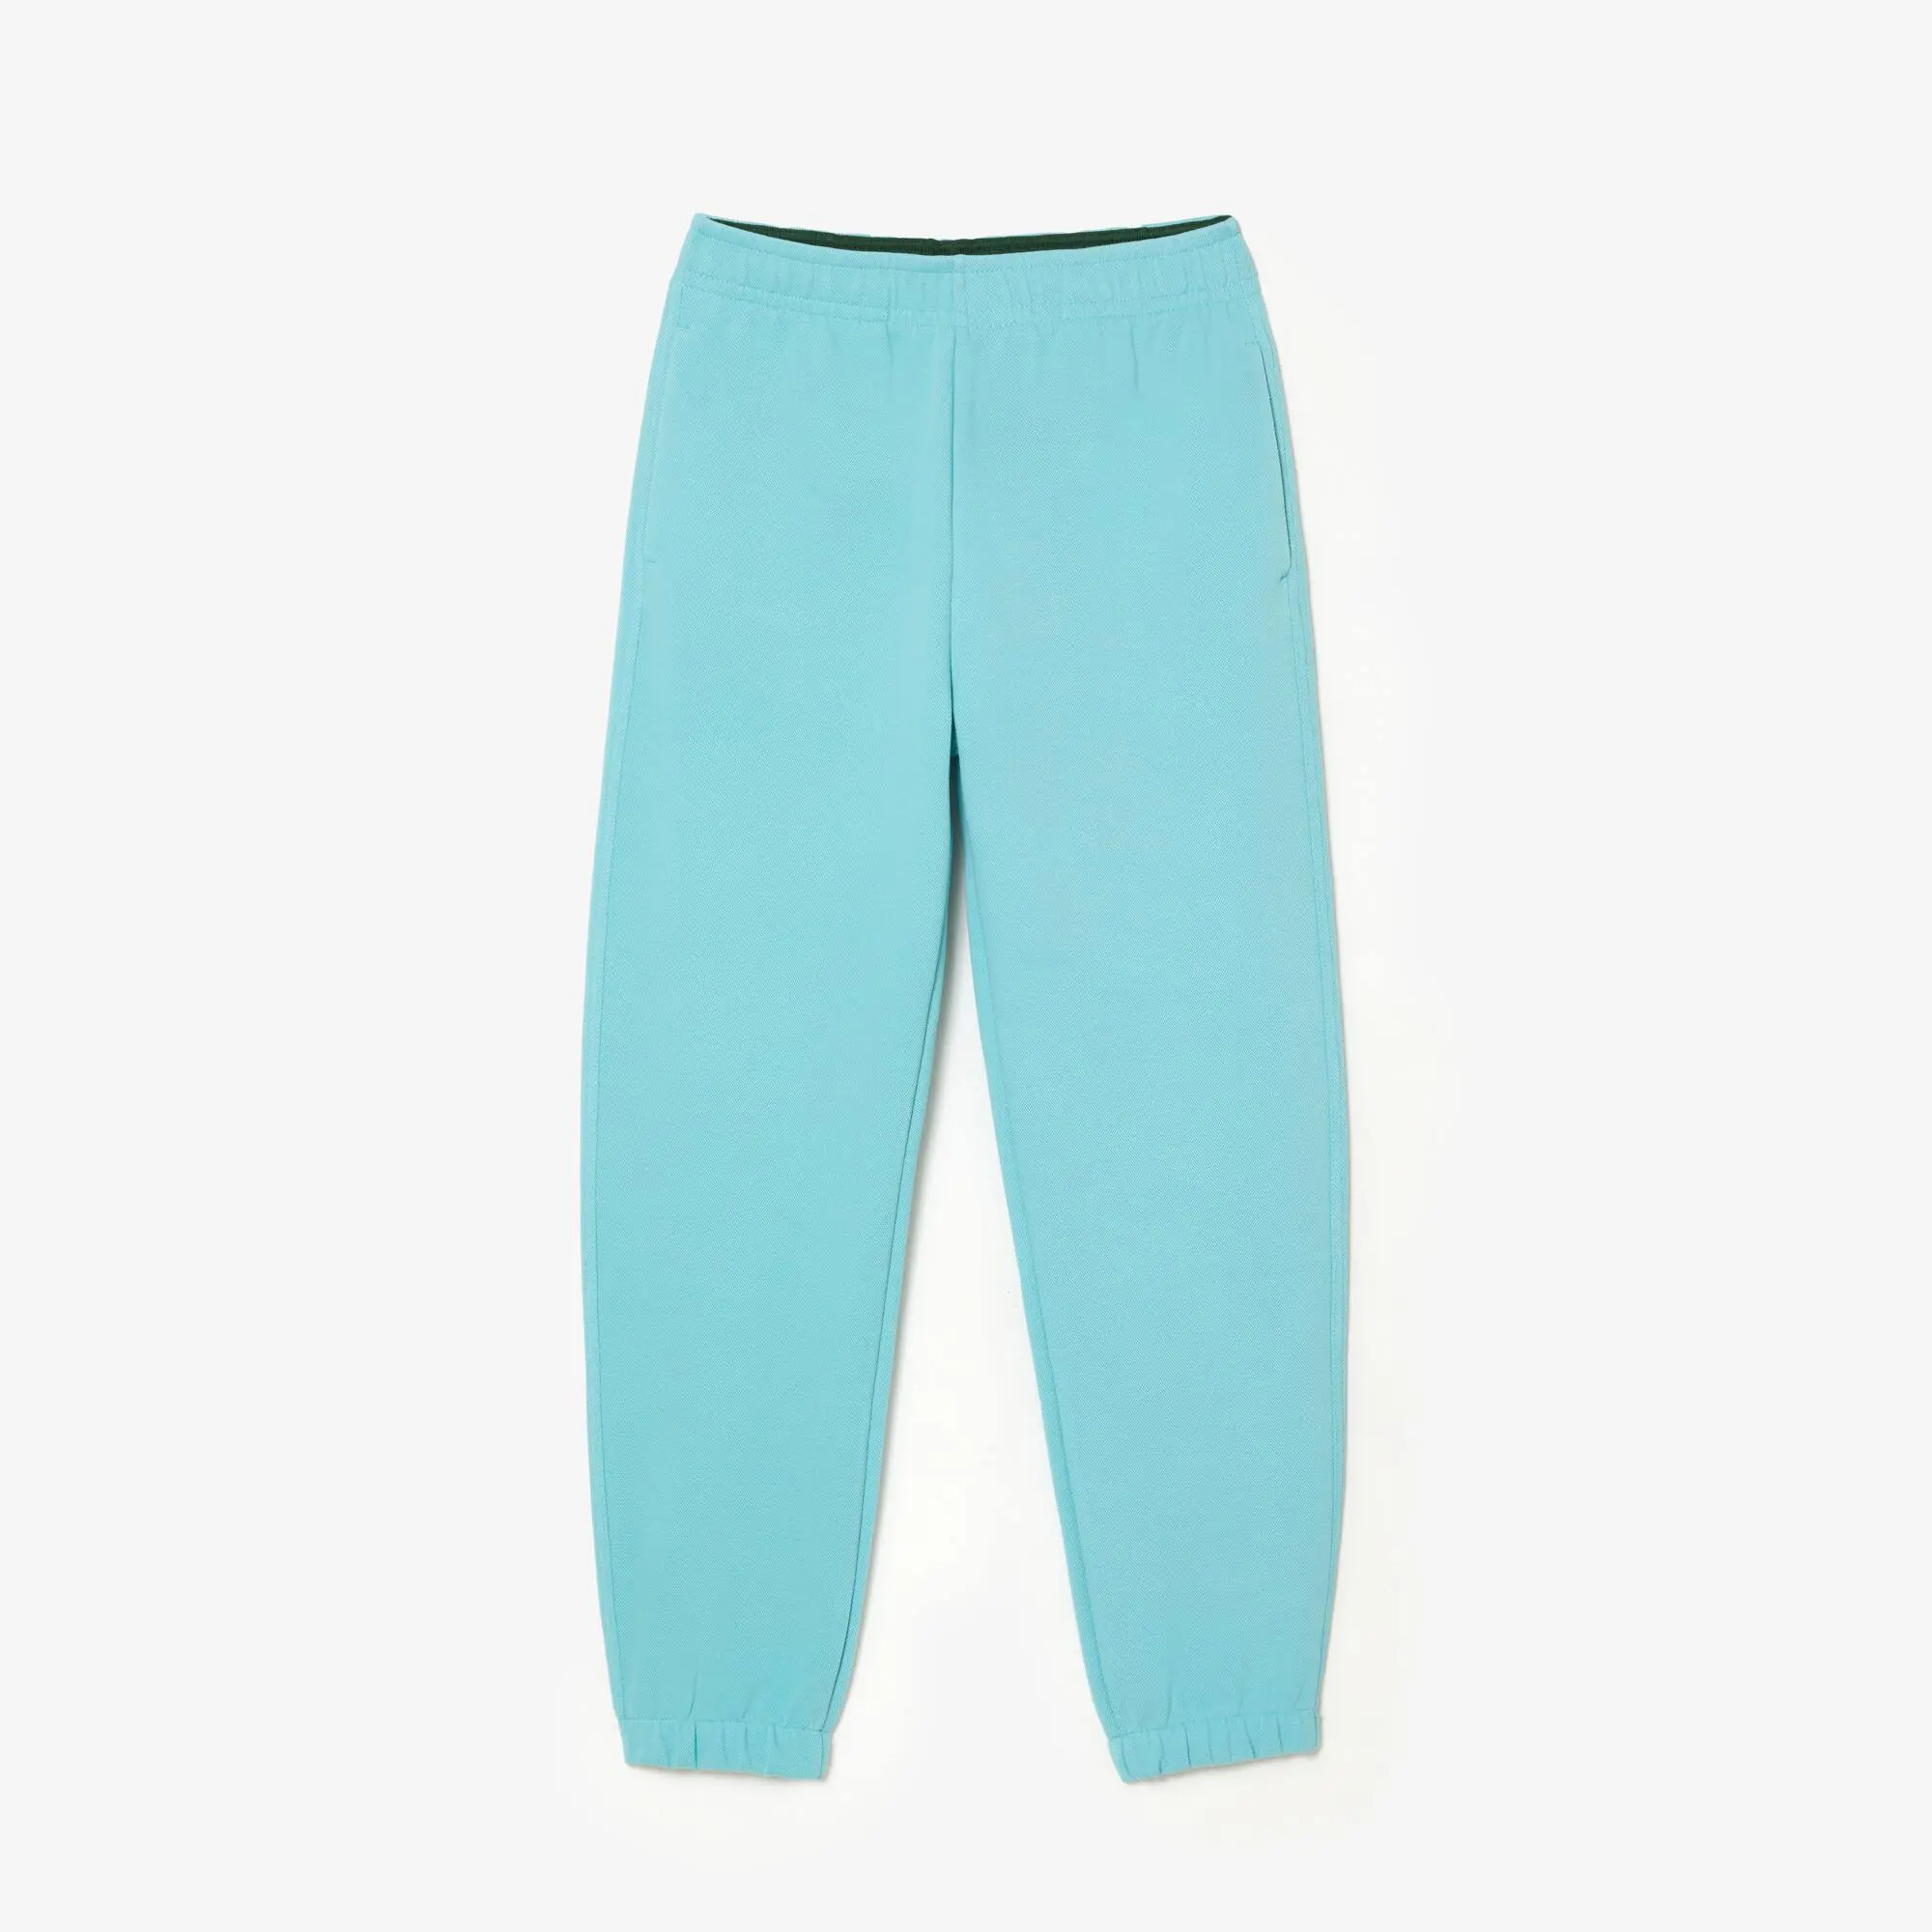 Lacoste Women’s Blended Cotton Jogger Pants. 2